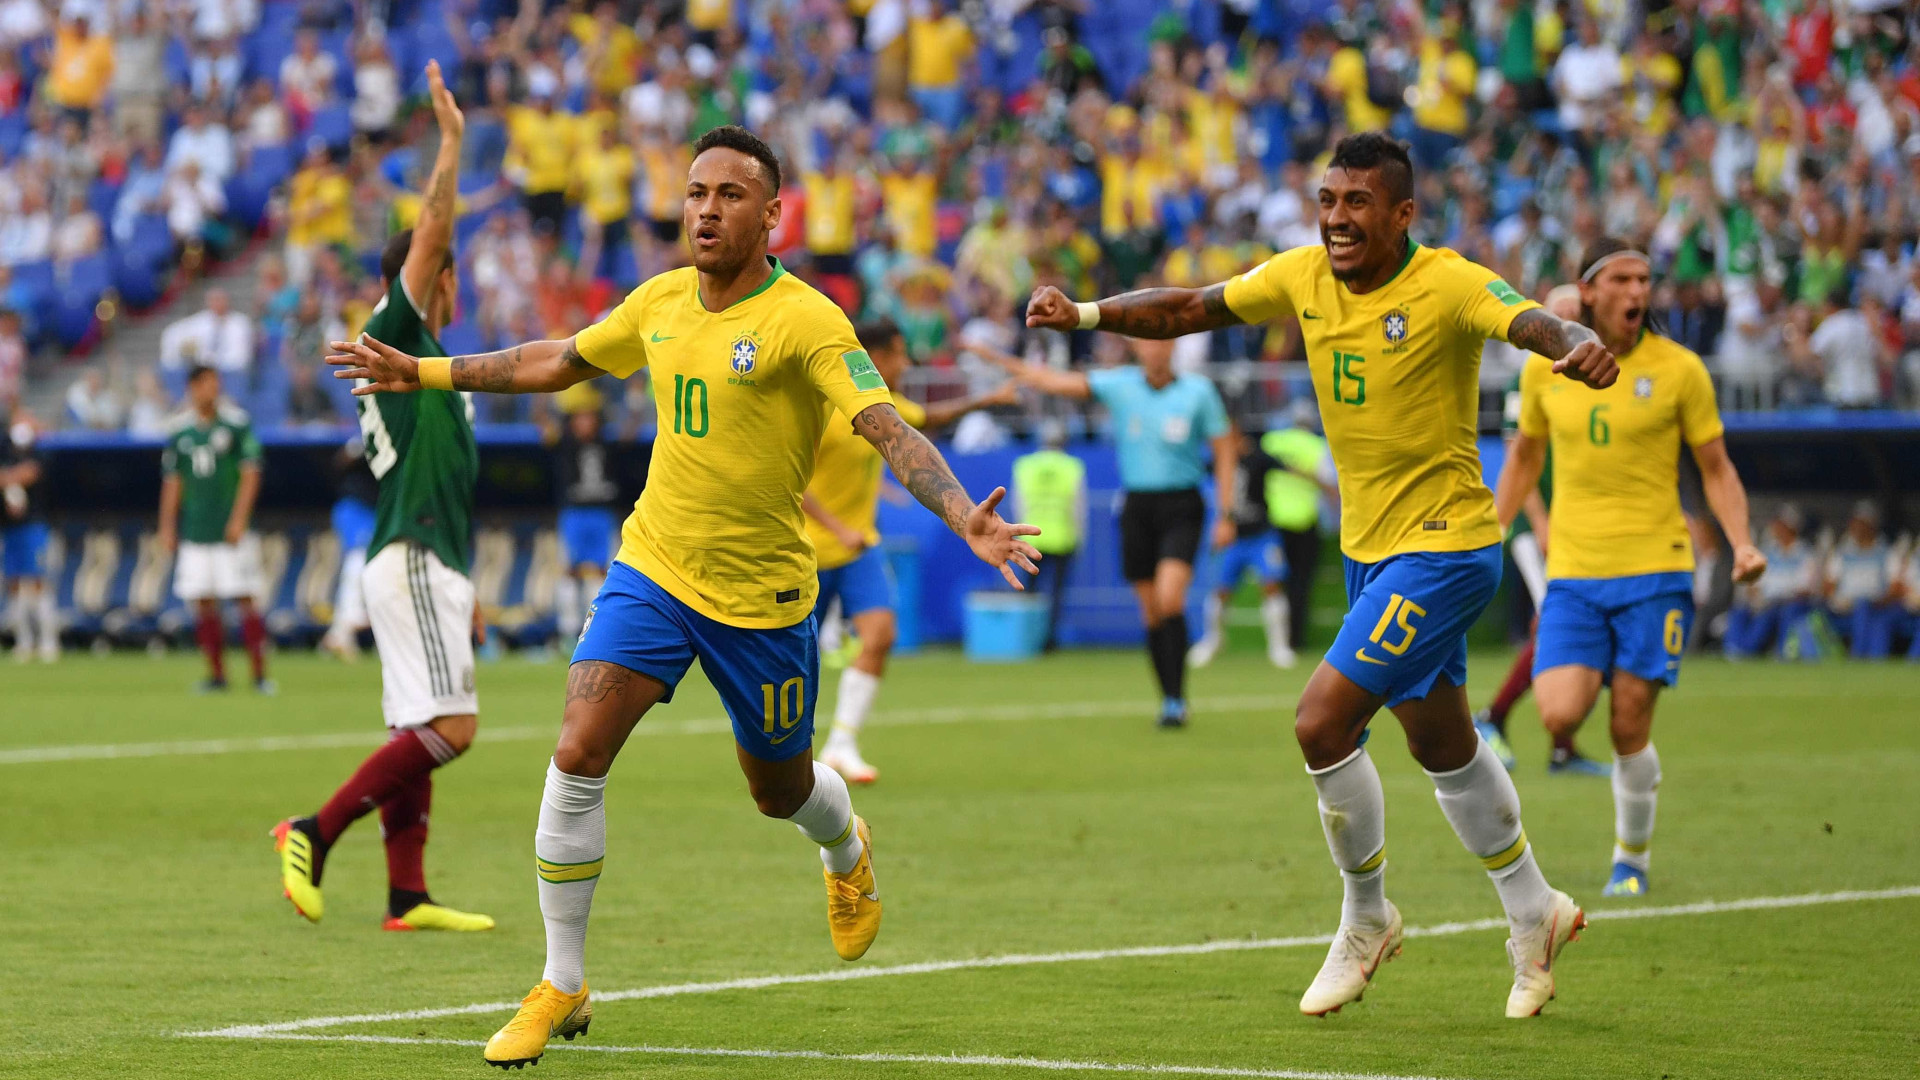 Brasil nas quartas! Neymar e Firmino marcam, e seleção elimina o México